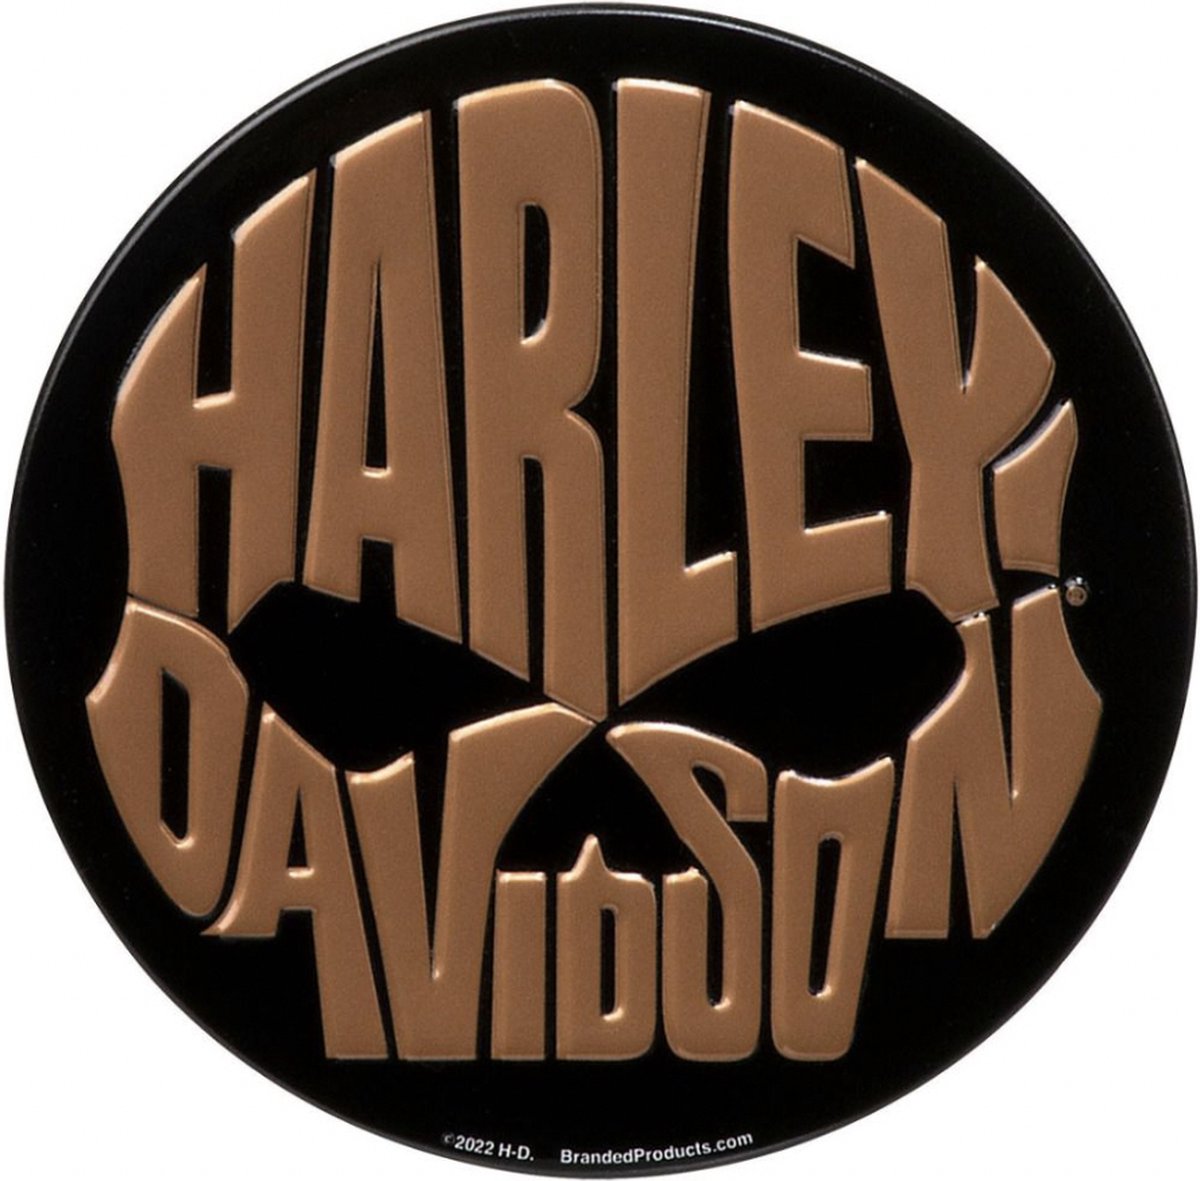 Harley-Davidson Koperen Schedel Magneet